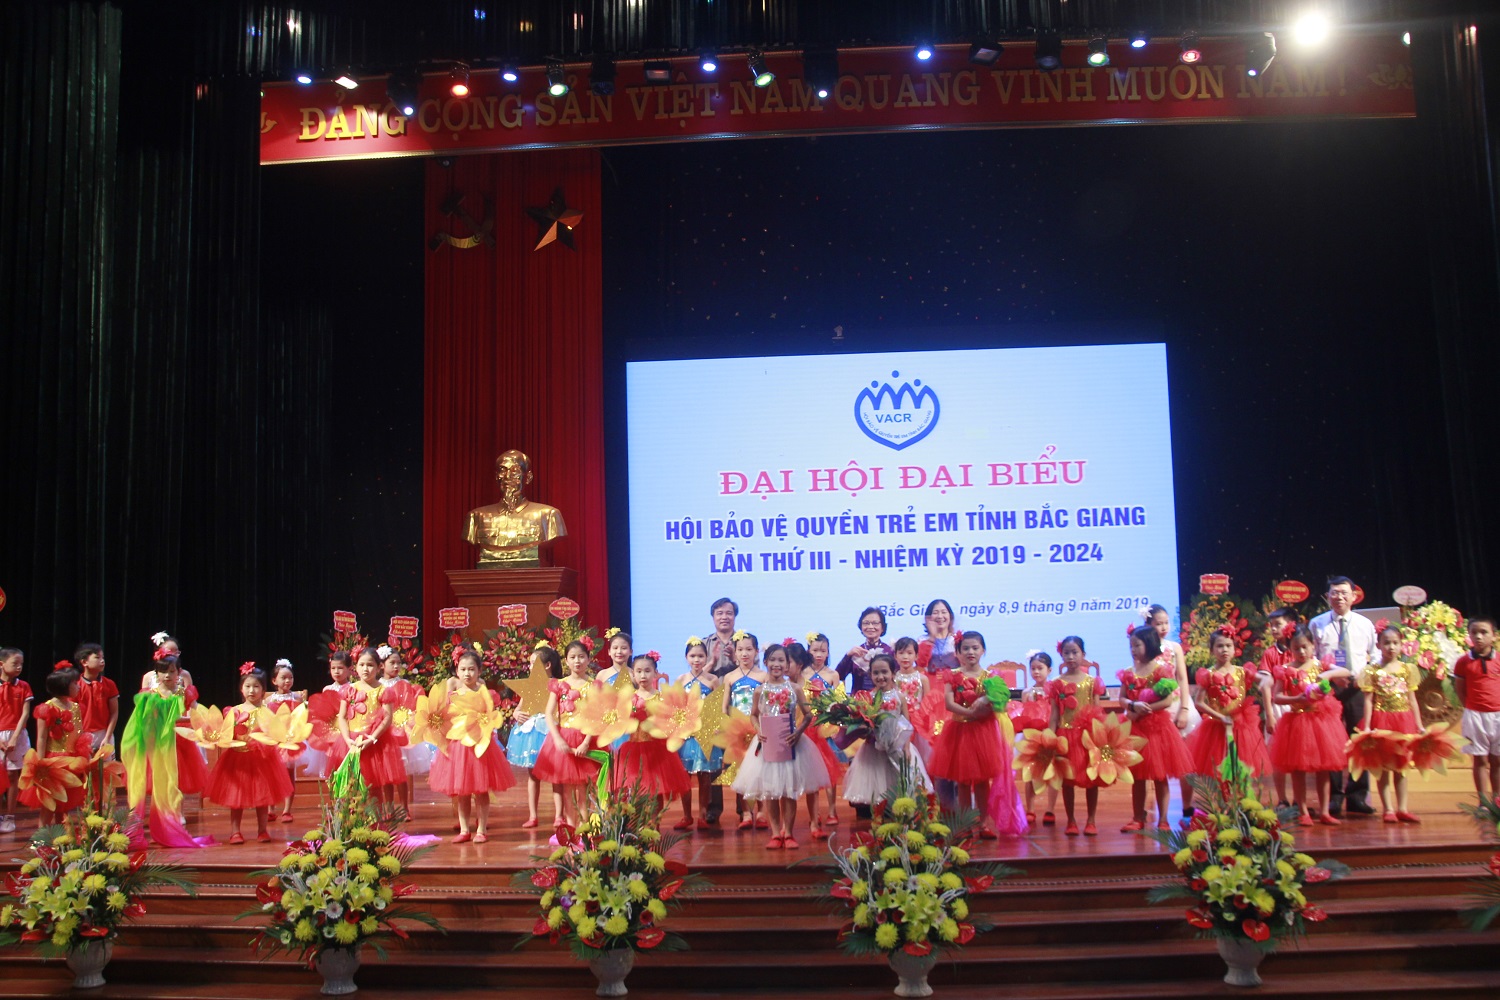 Khai mạc Đại hội đại biểu Hội Bảo vệ quyền trẻ em tỉnh Bắc Giang lần thứ III